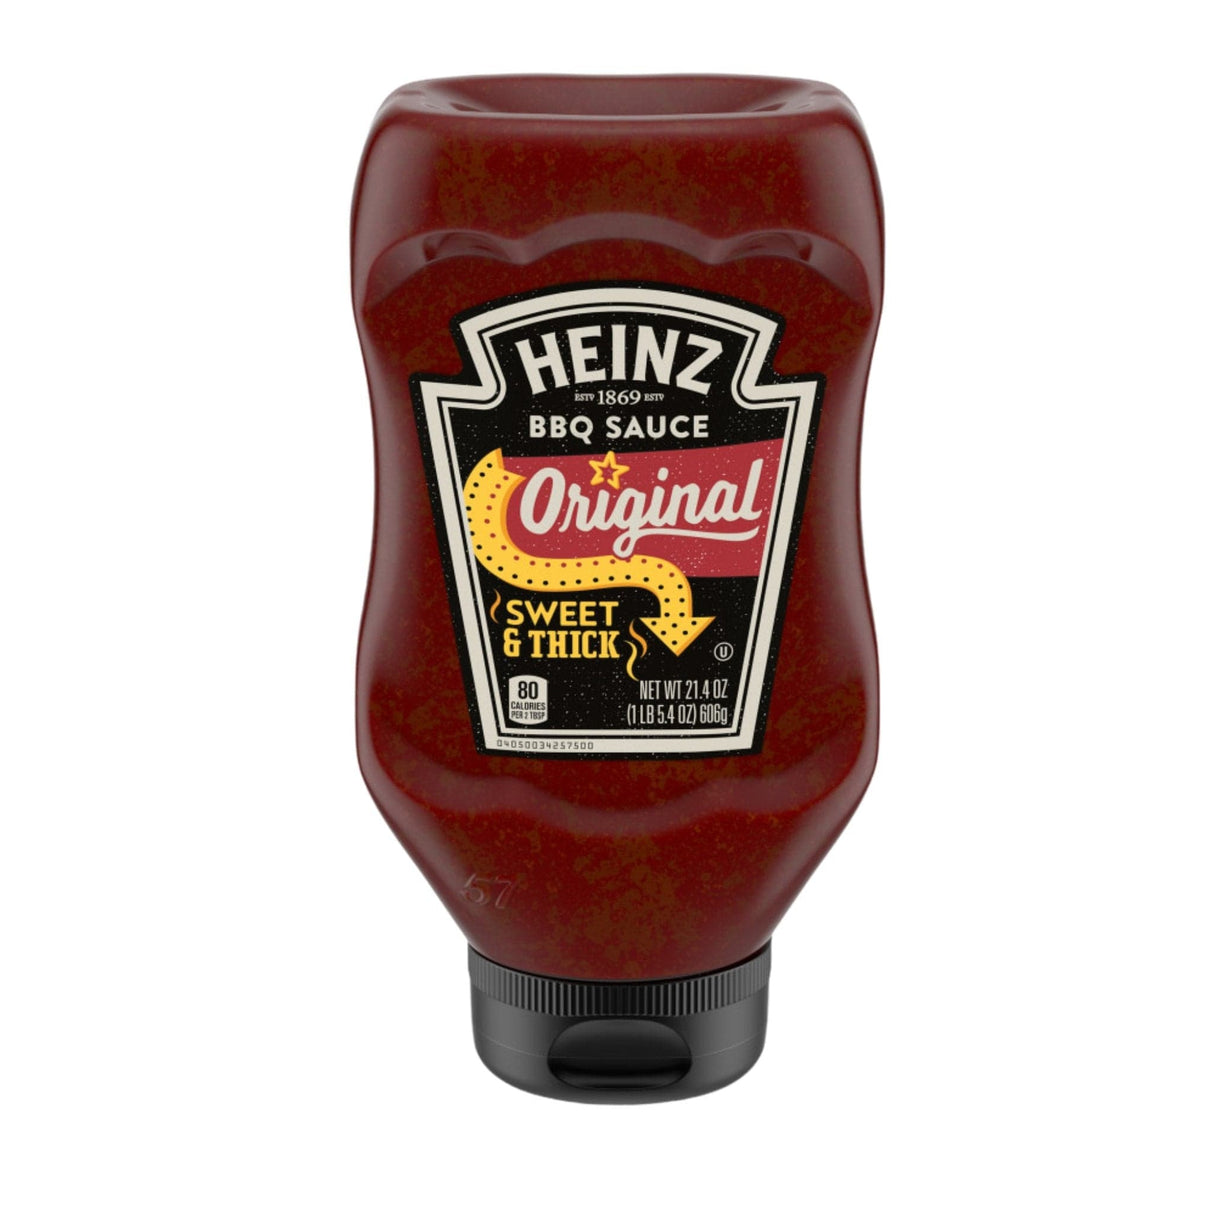 Heinz Original Sweet & Thick BBQ Sauce - hot sauce market & more